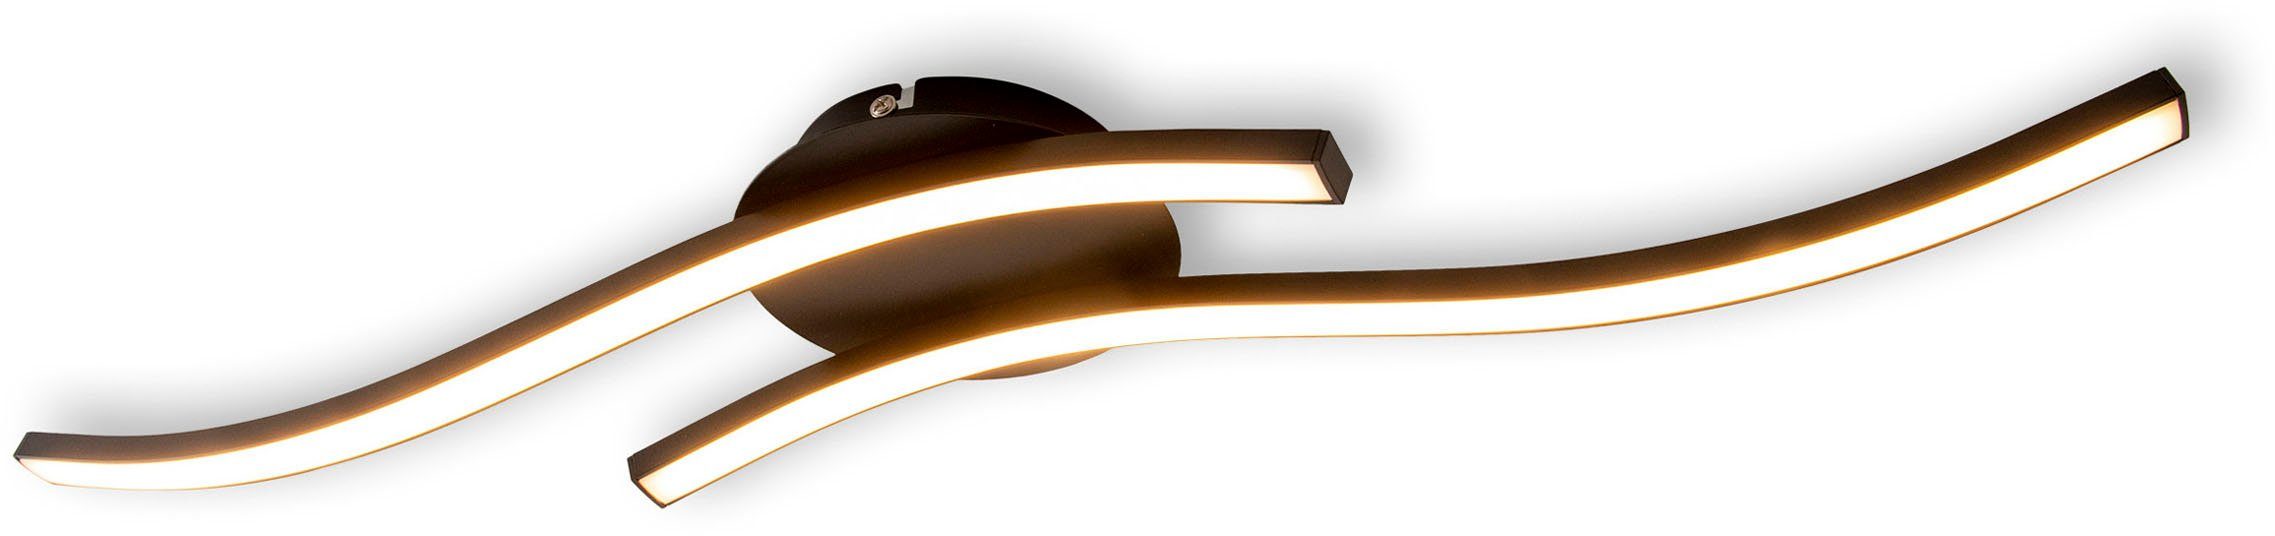 Deckenlampe, fest 65cm, Onda, schwarz-matt, Warmweiß, warmweiß, Wandleuchte integriert, LED L: näve 12W, LED IP20 Deckenleuchte